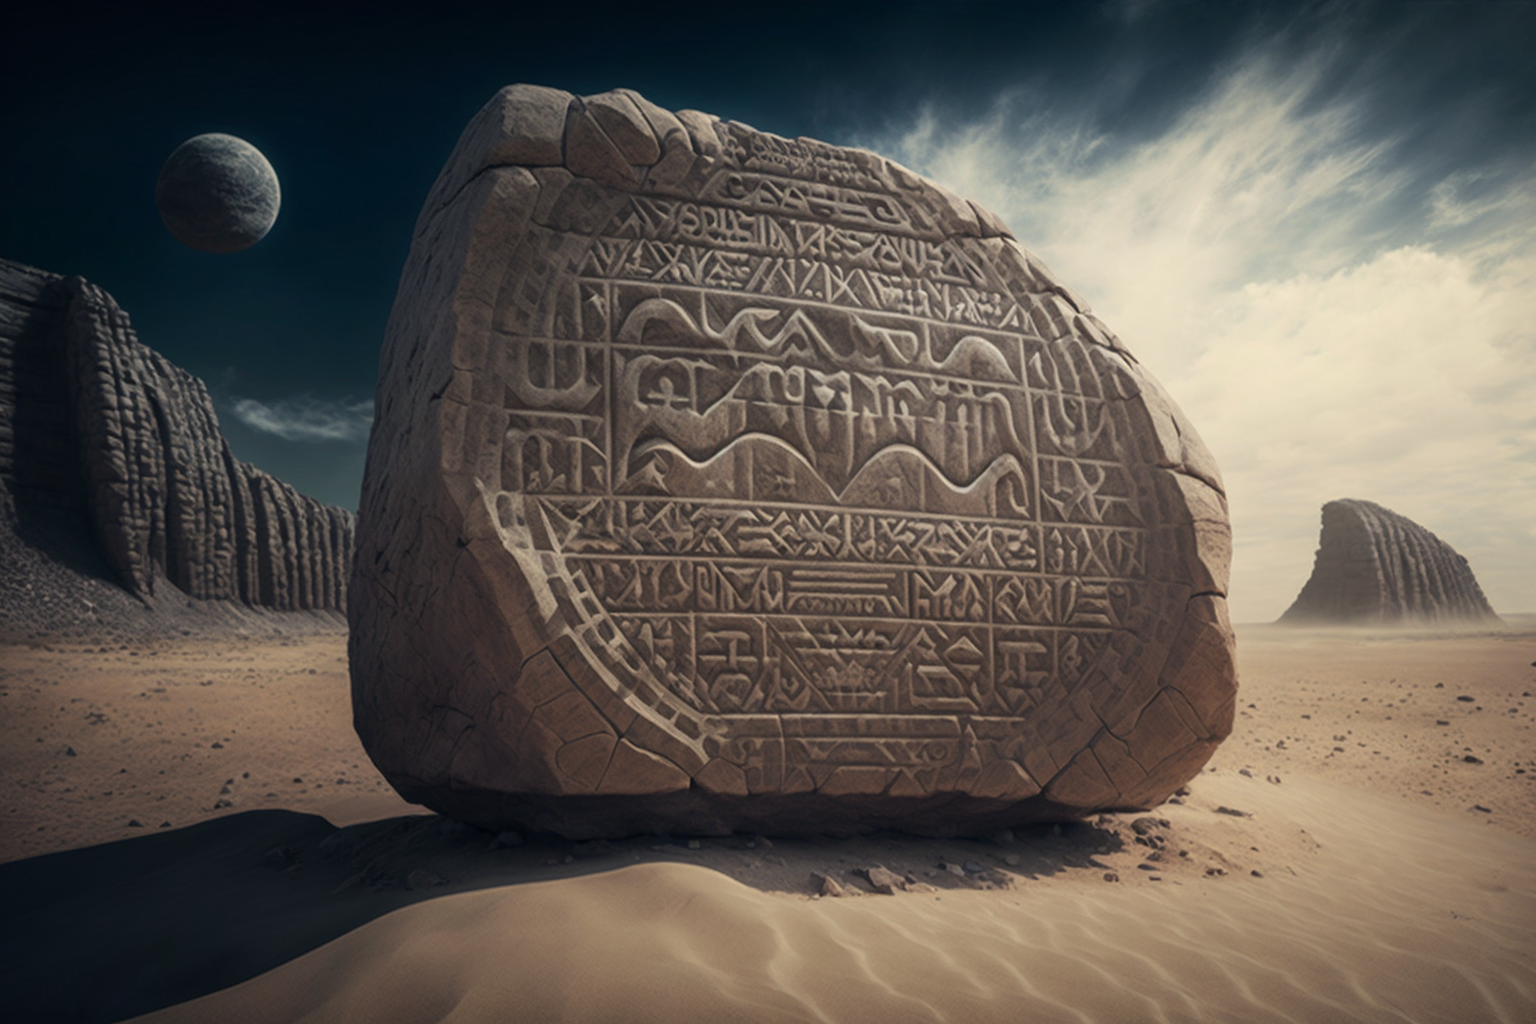 extraterrestrial Rosetta Stone on desert planet